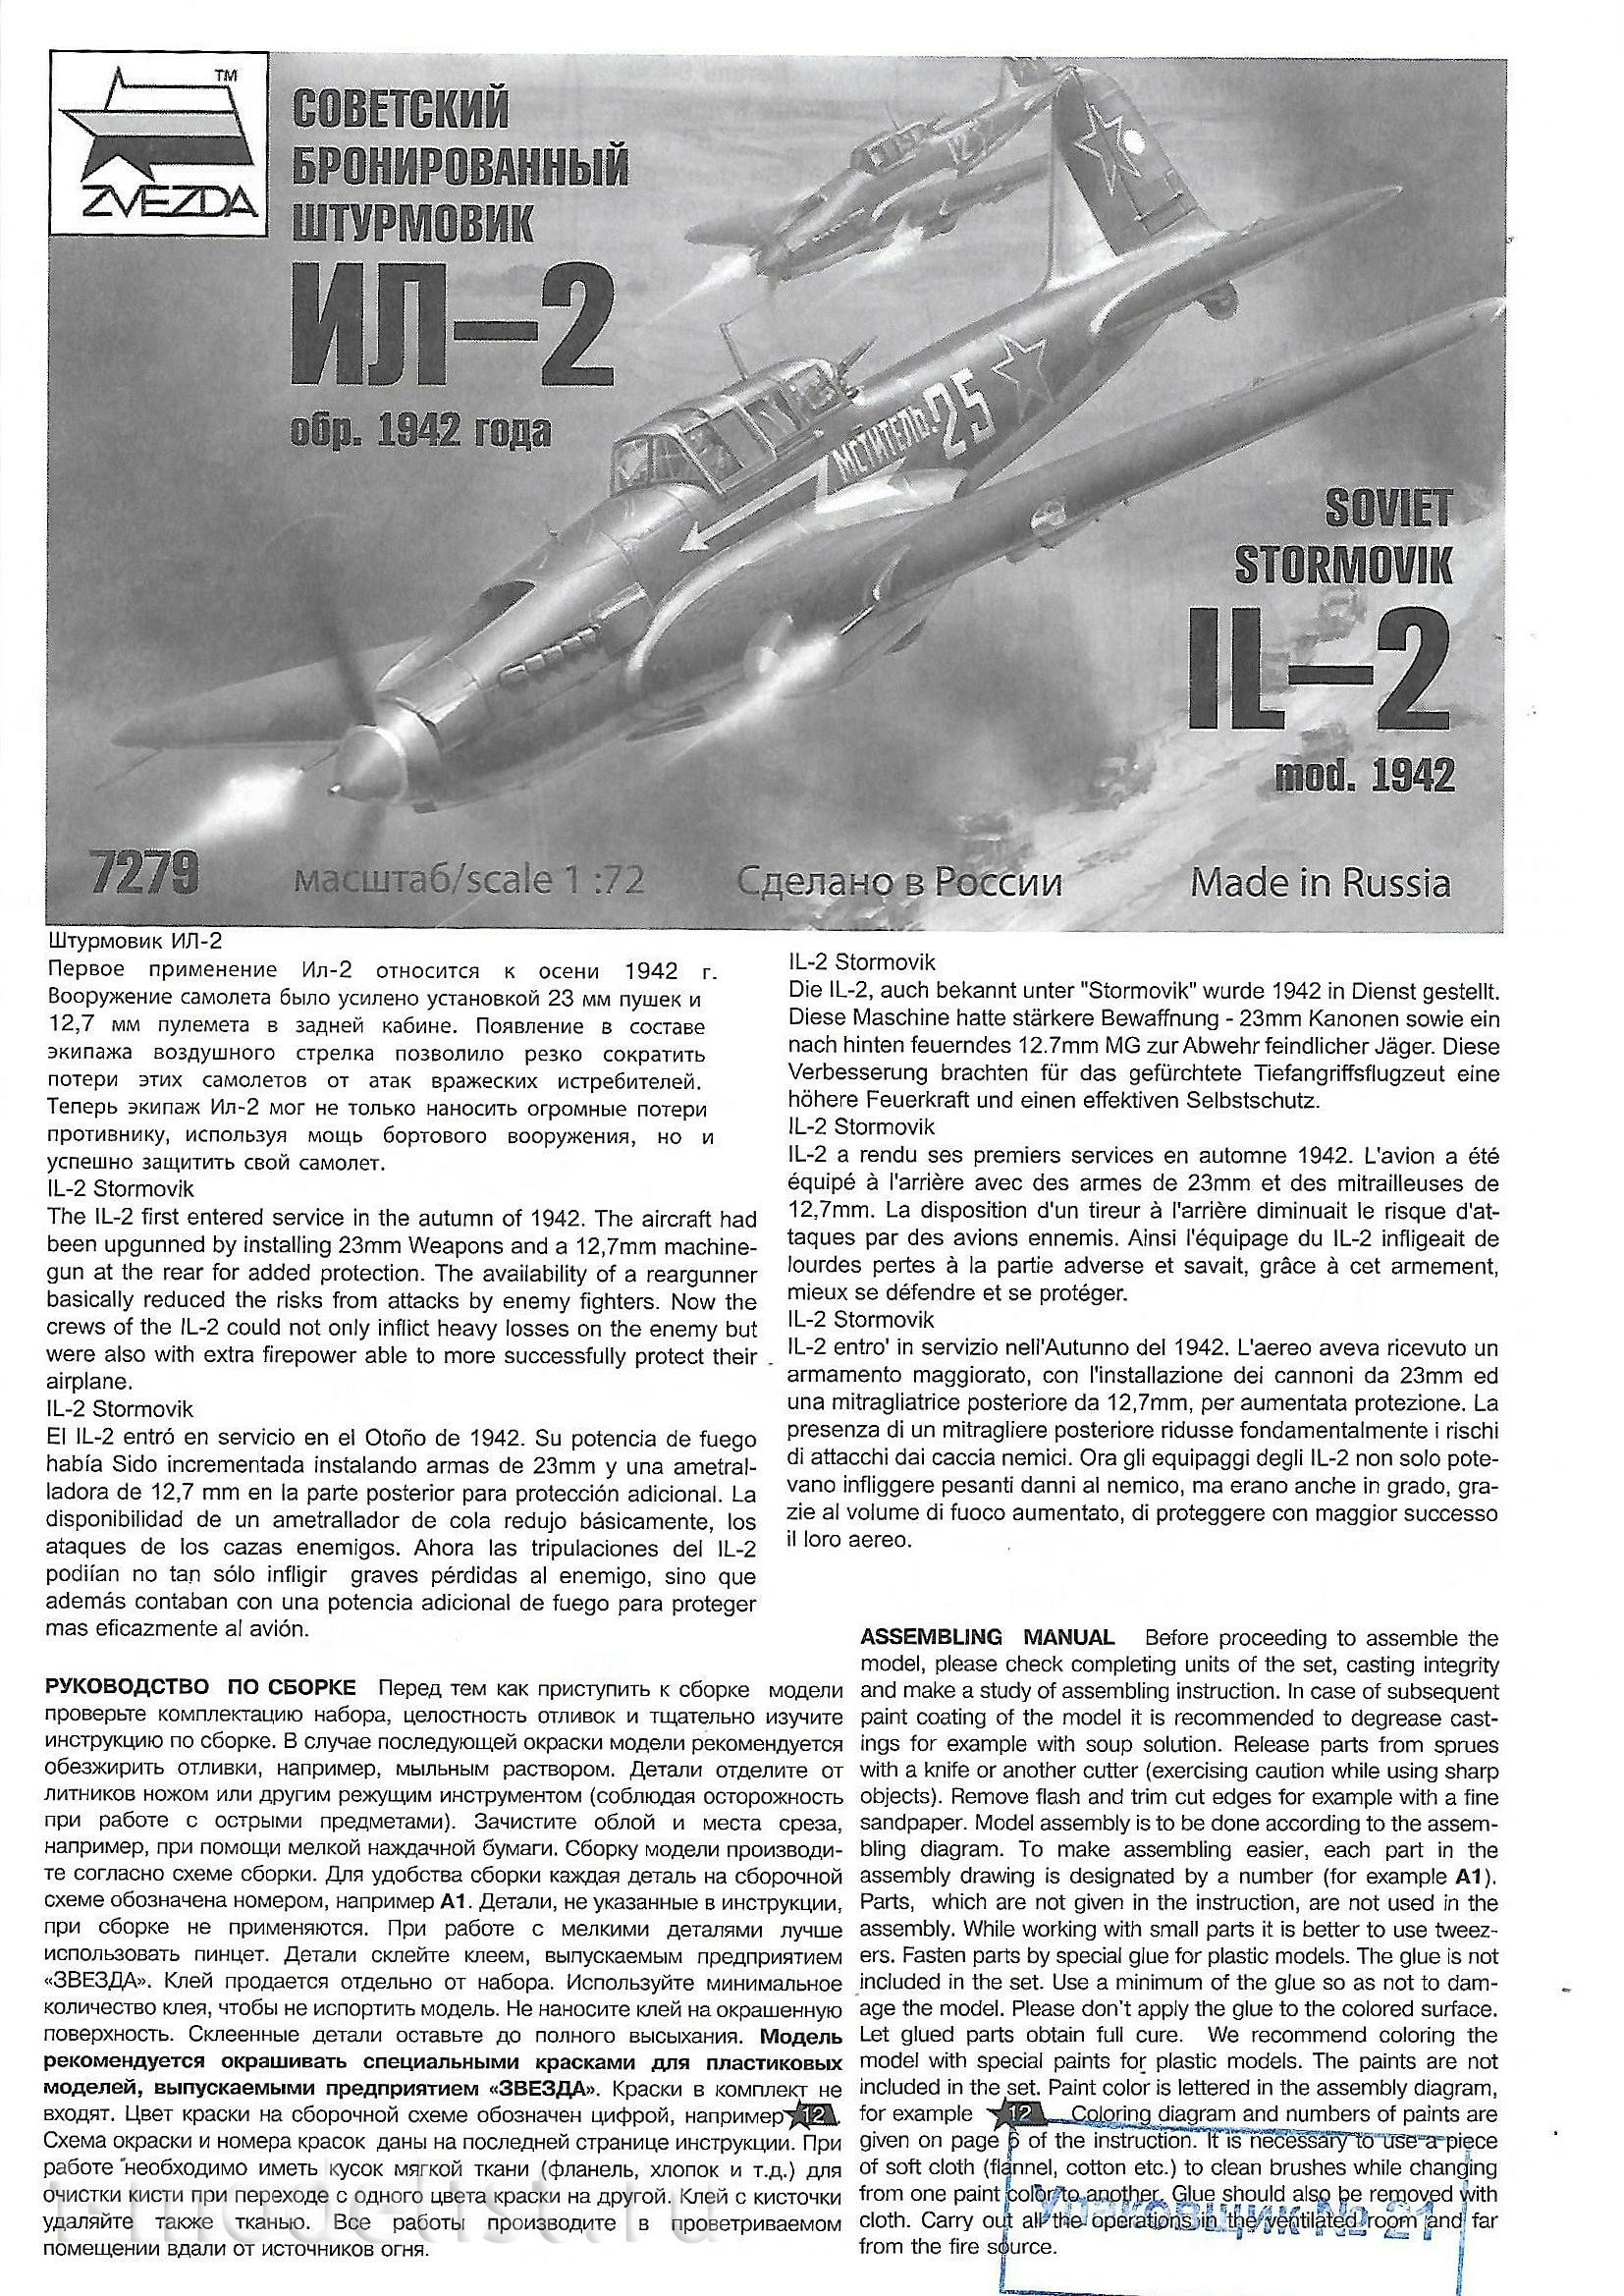 7279 Звезда 1/72 Советский бронированный штурмовик Ил-2 (обр. 1942 г.)